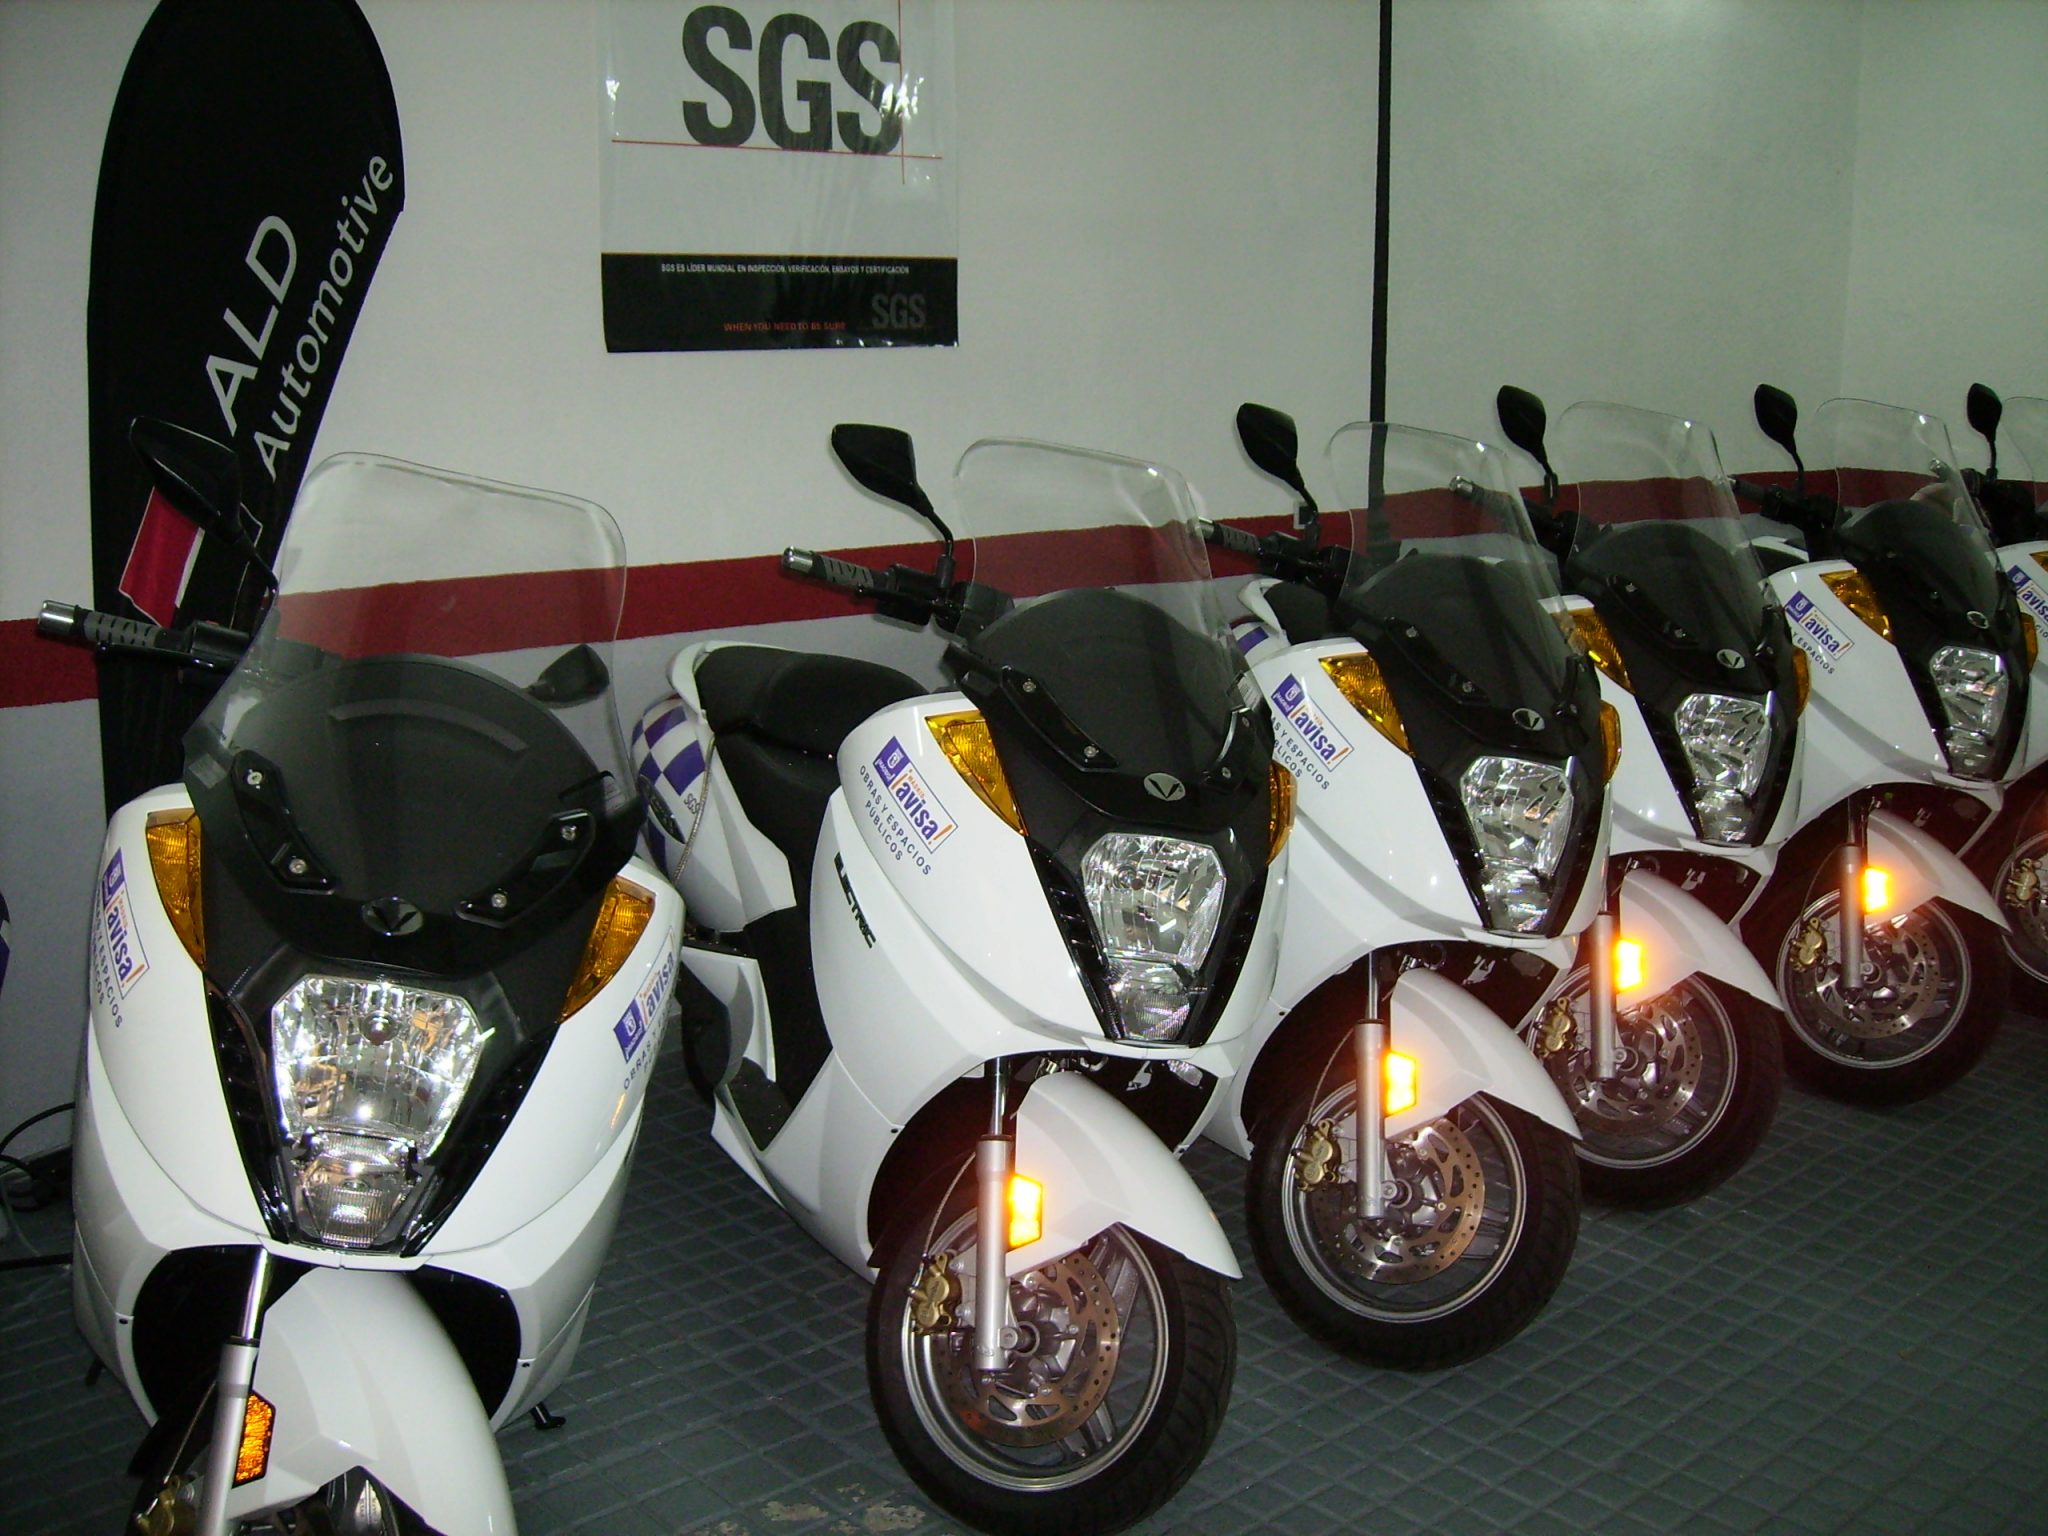 ALD Automotive entrega más de 30 motos eléctricas e híbridas a SGS que serán utilizadas para el Ayuntamiento de Madrid